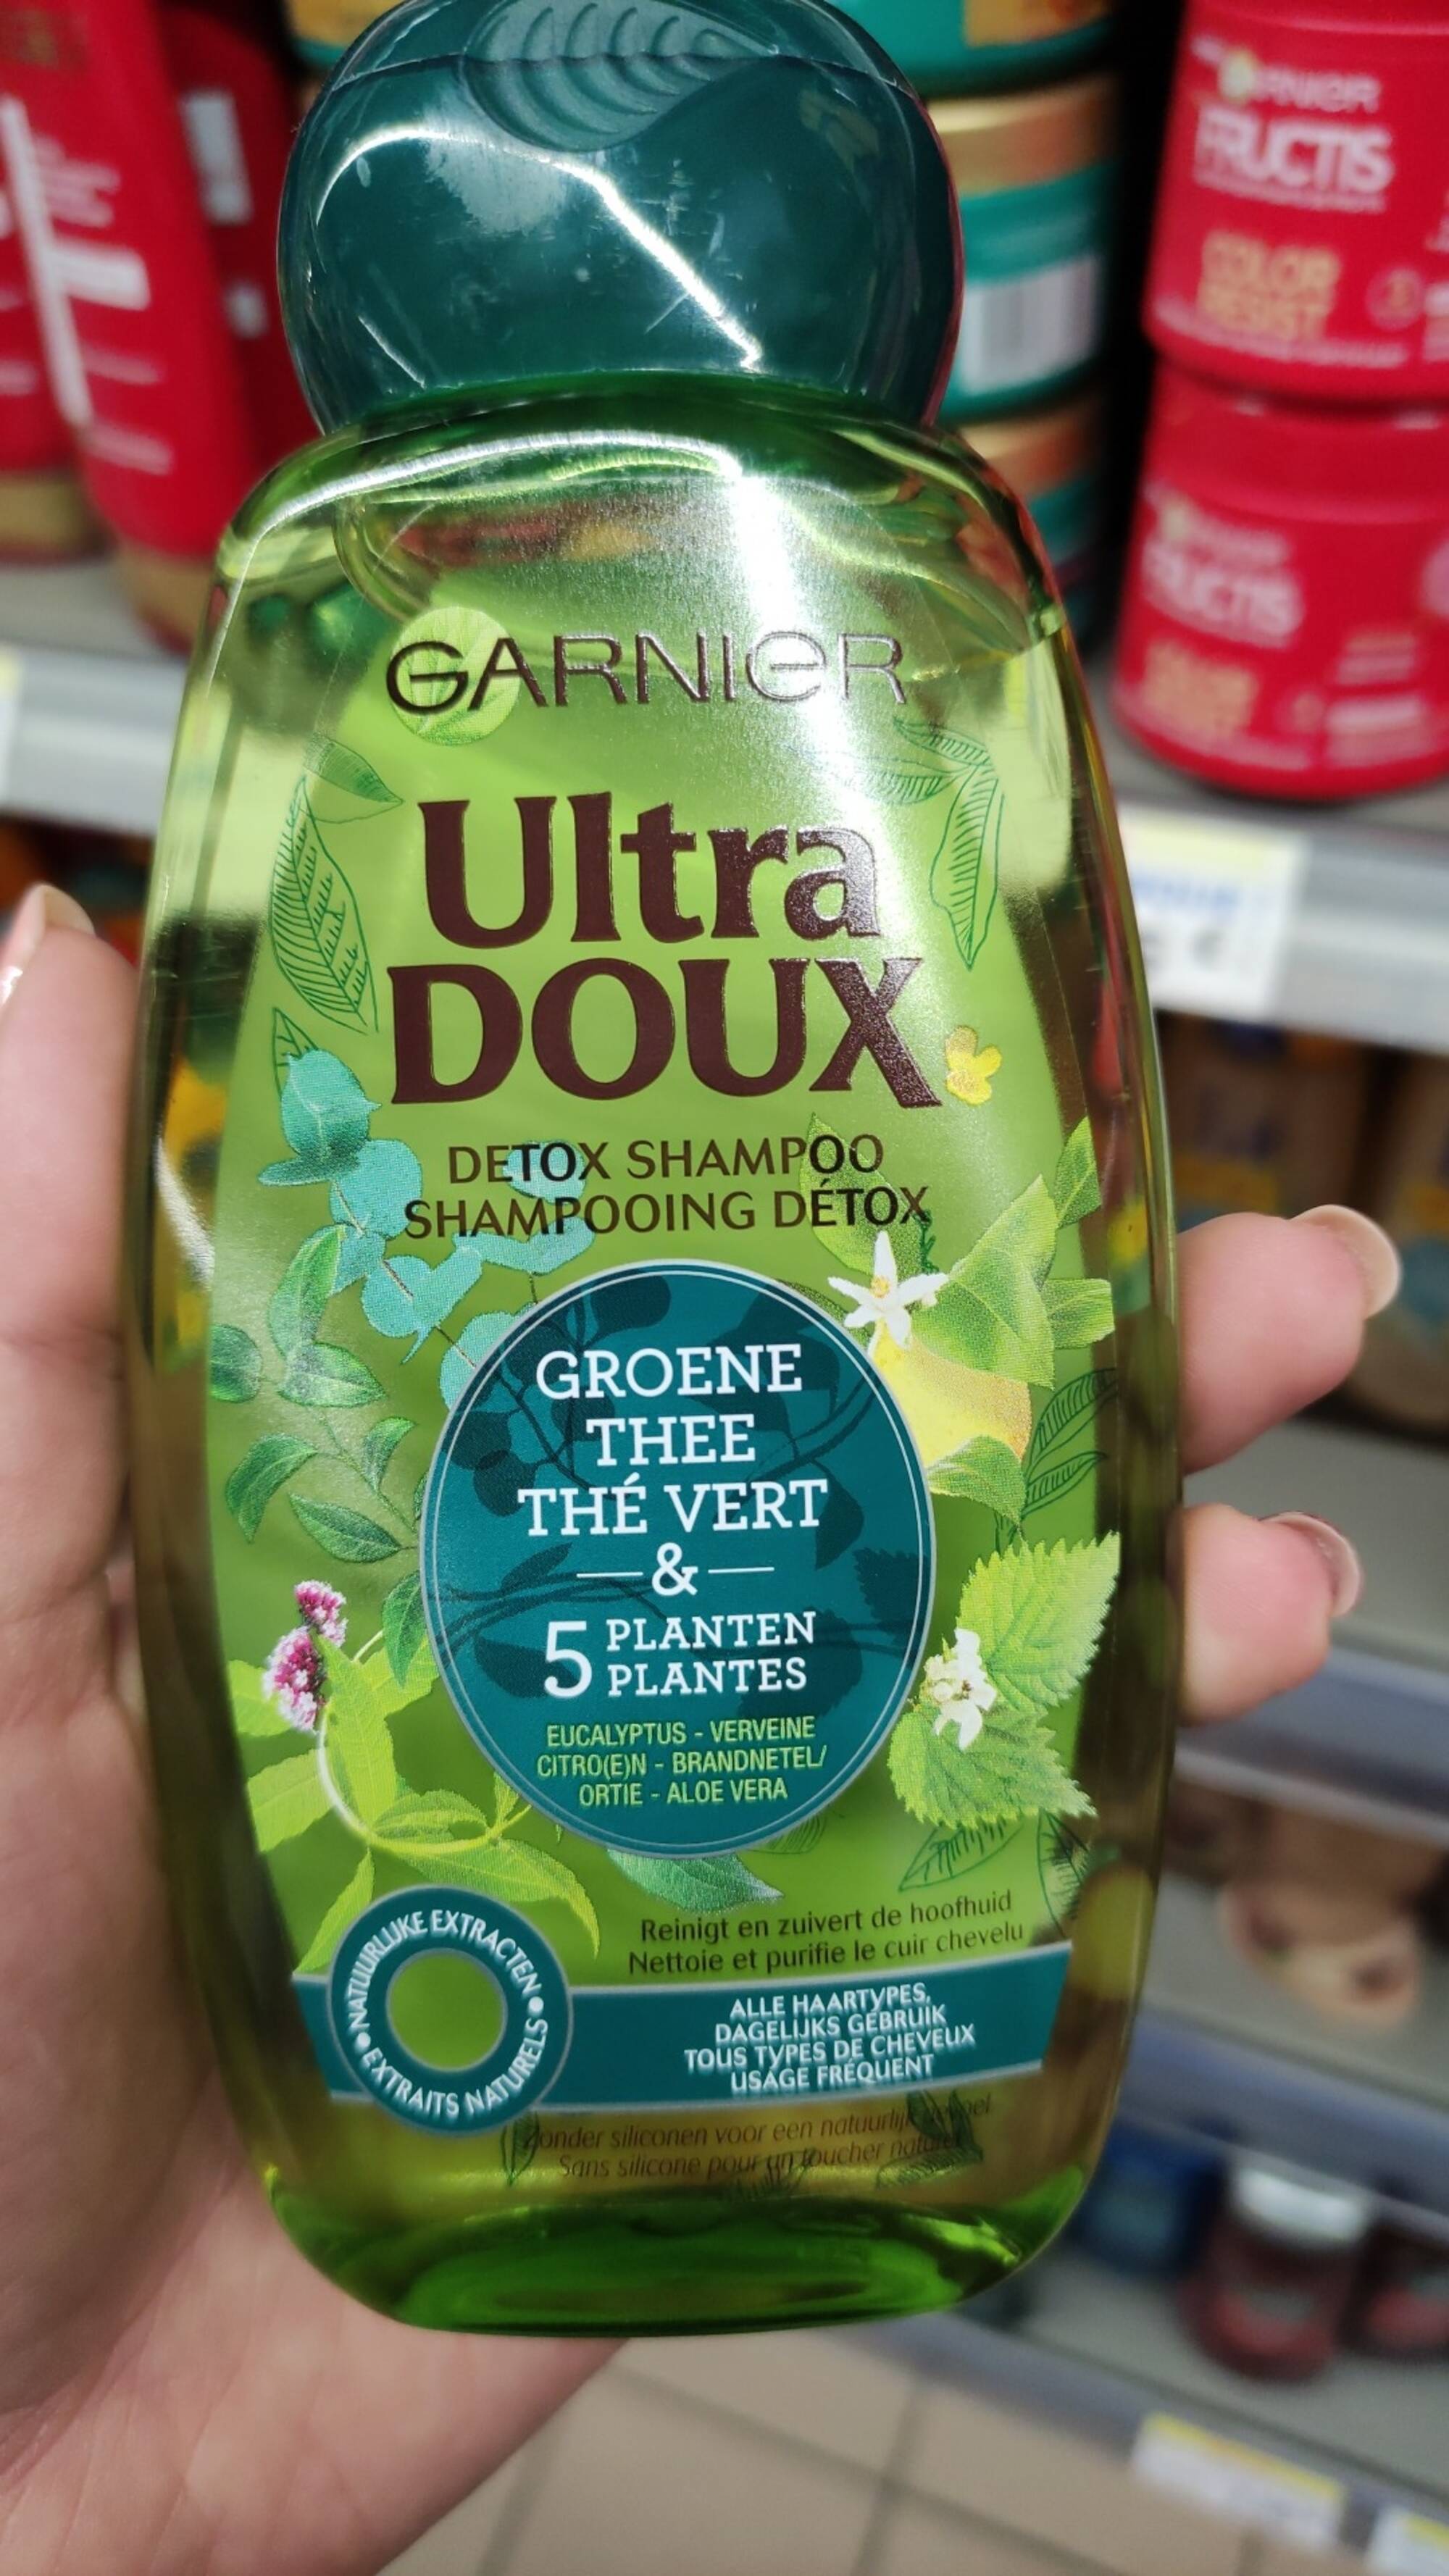 GARNIER - Ultra doux - Shampooing détox